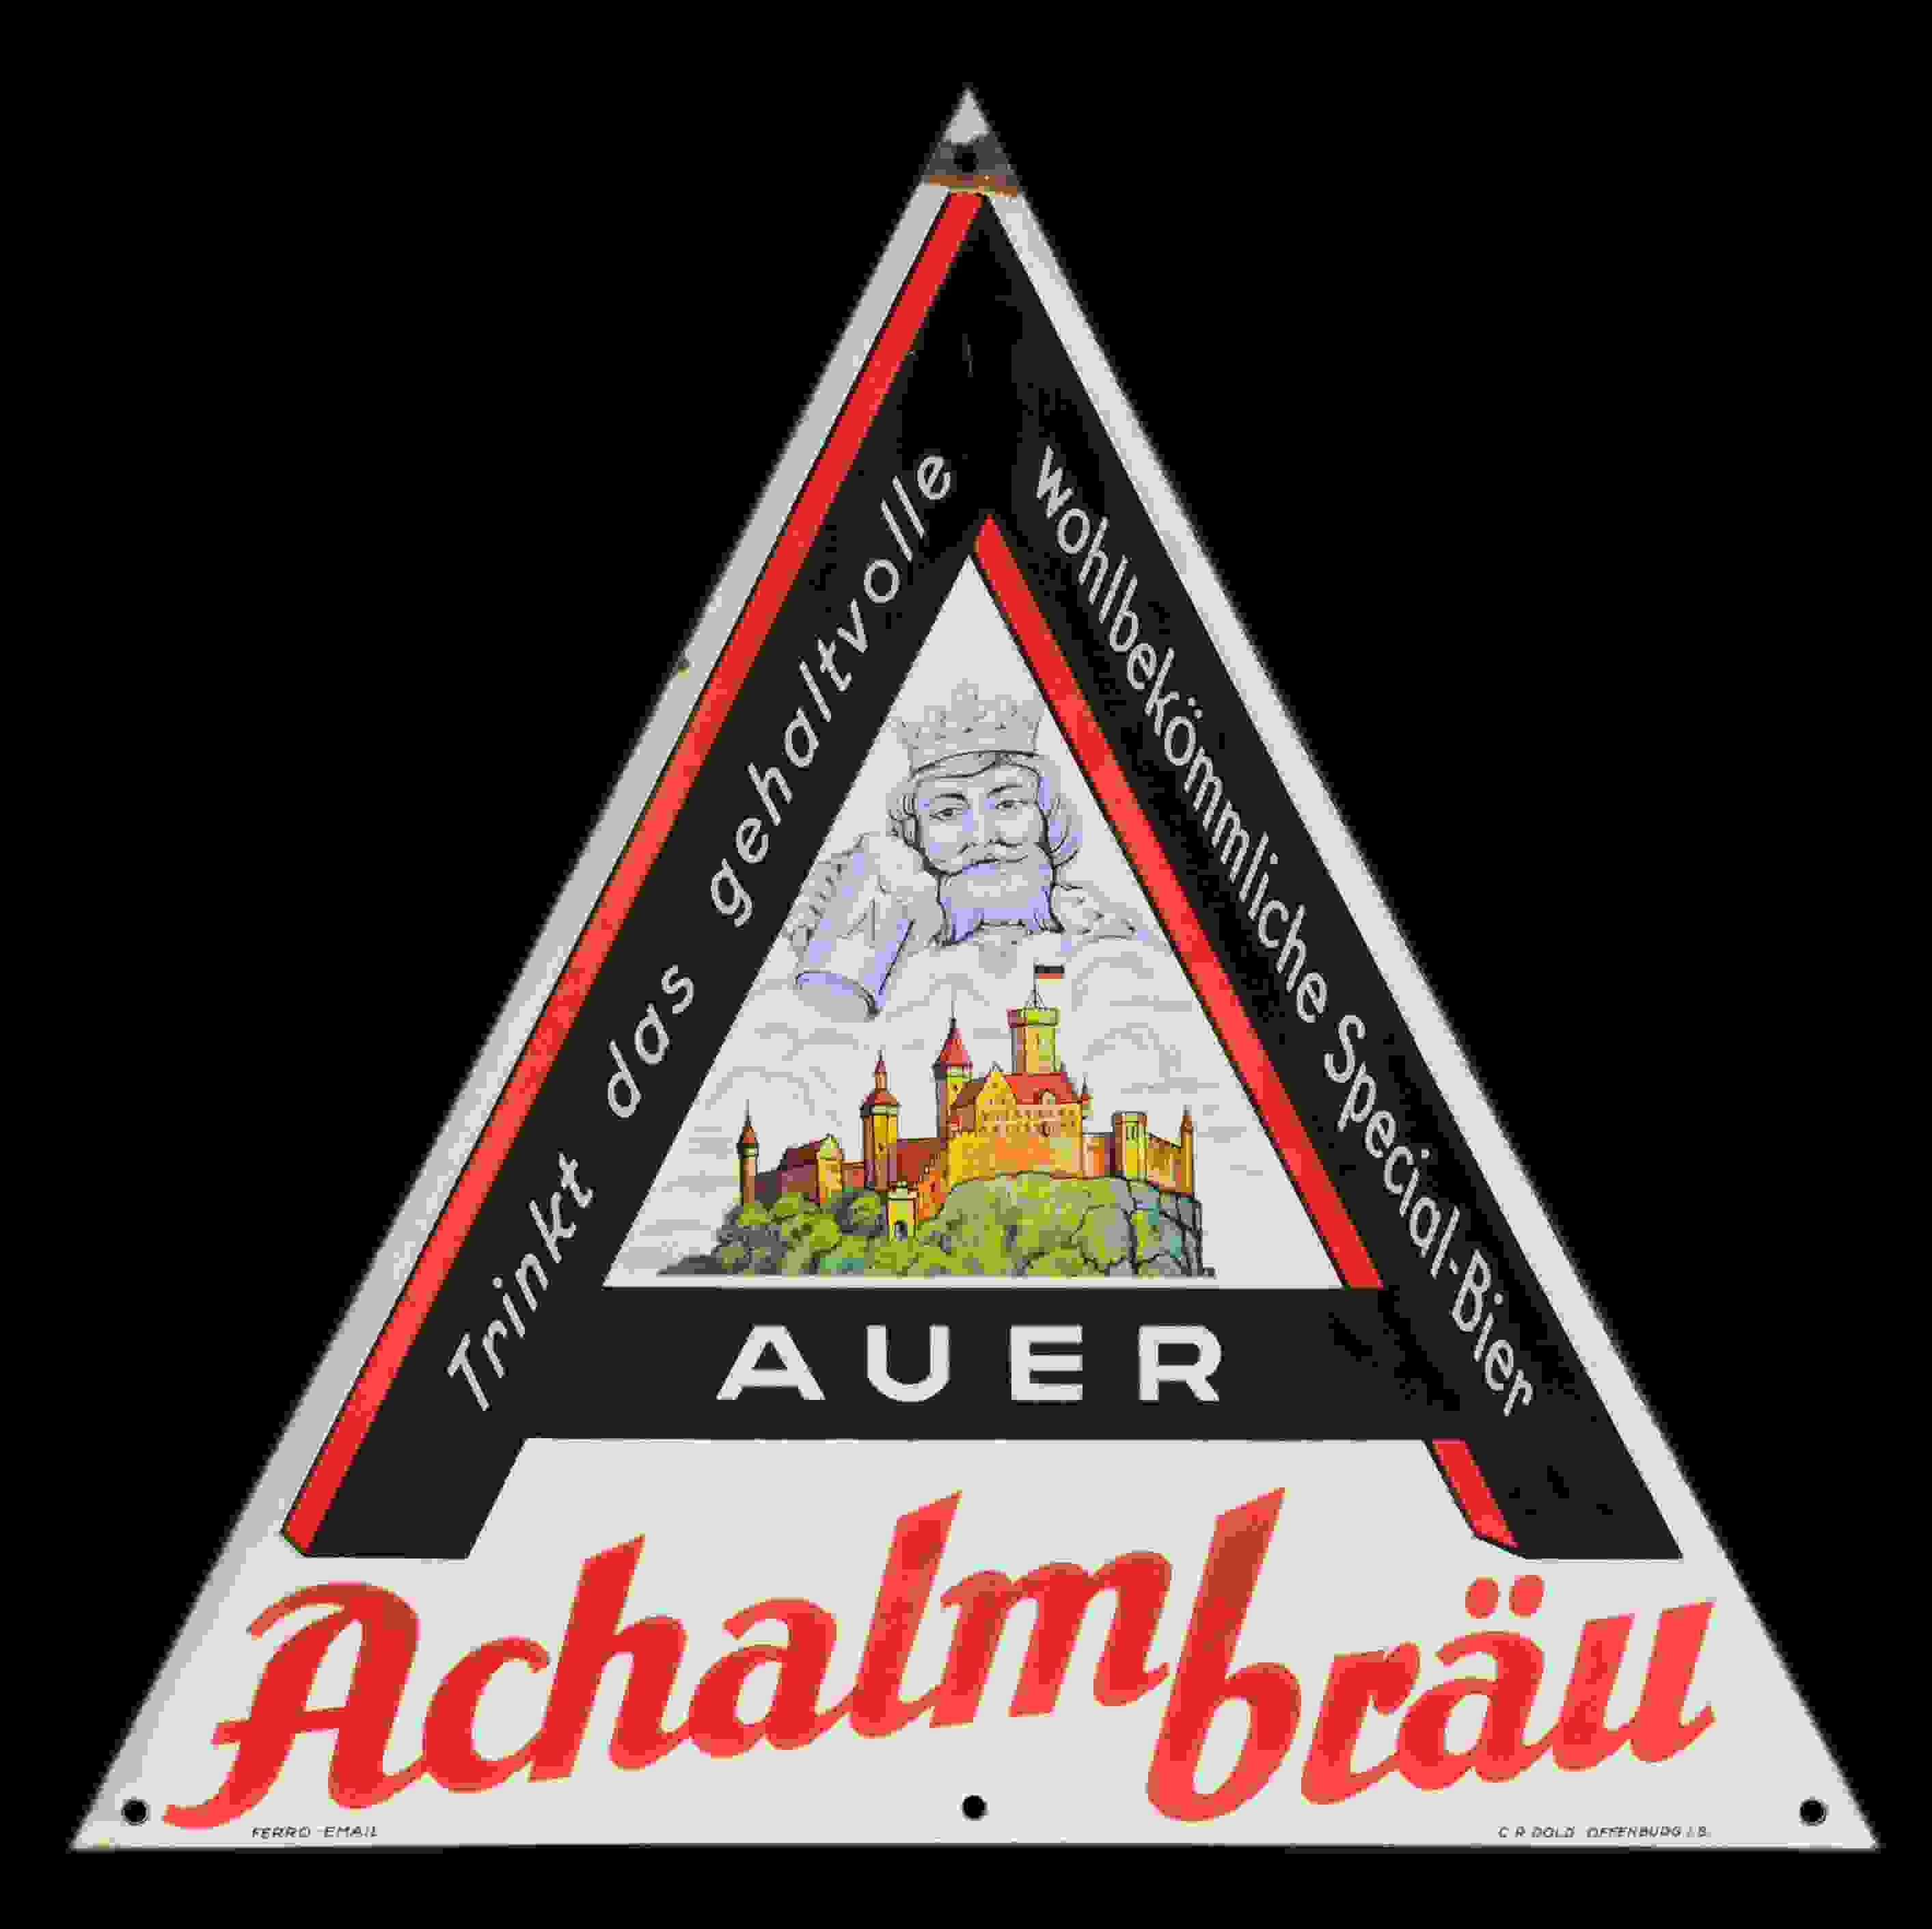 Auer Bier Achalmbräu 